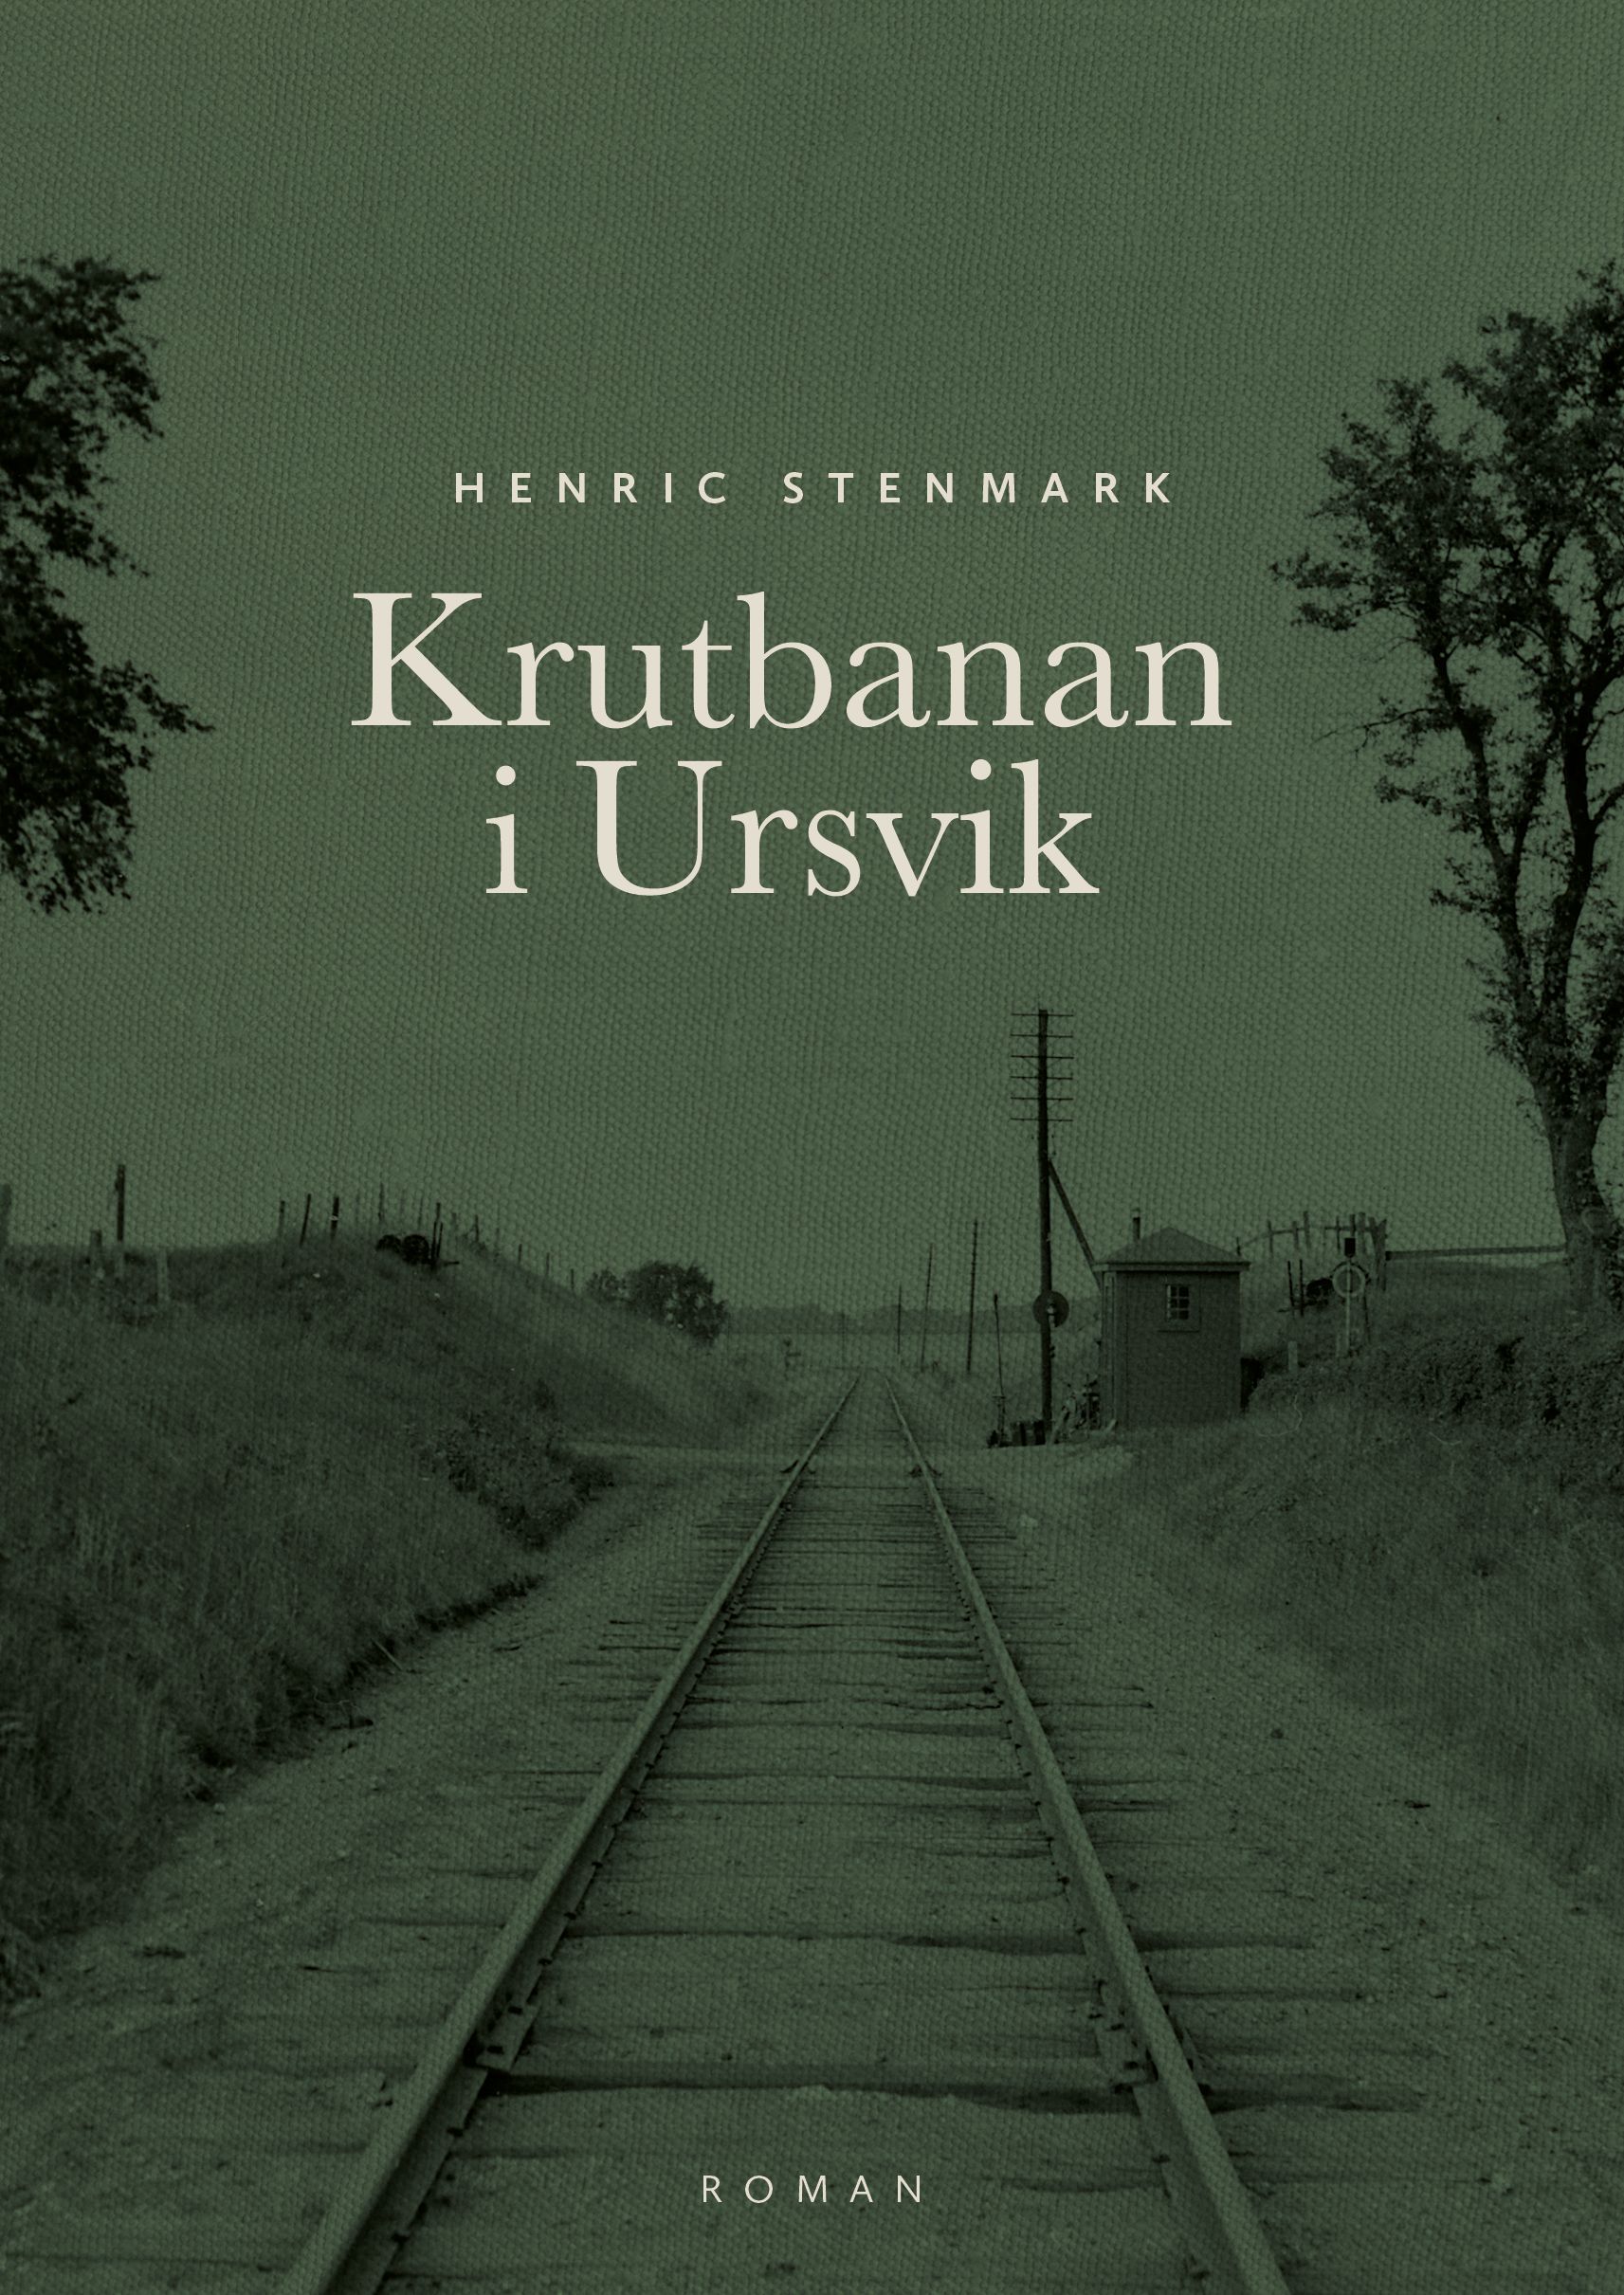 Krutbanan i Ursvik, e-bok av Henric Stenmark